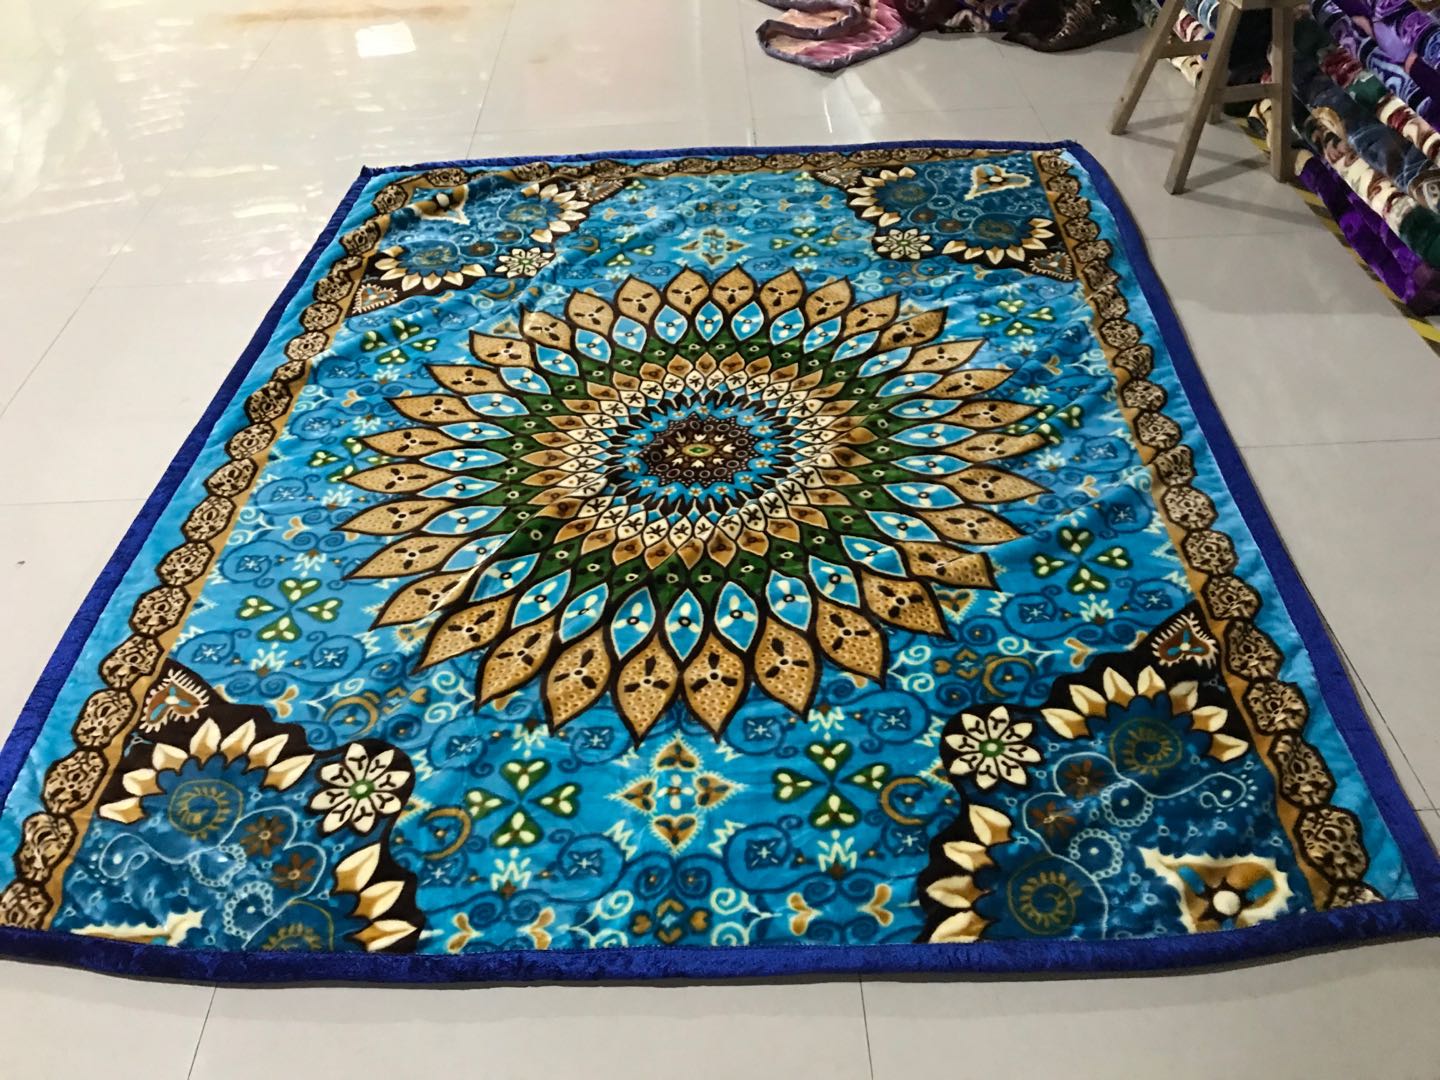 厂家批发外贸毛毯绒毯法兰绒珊瑚绒拉舍尔毛毯尺寸可定制花色67产品图